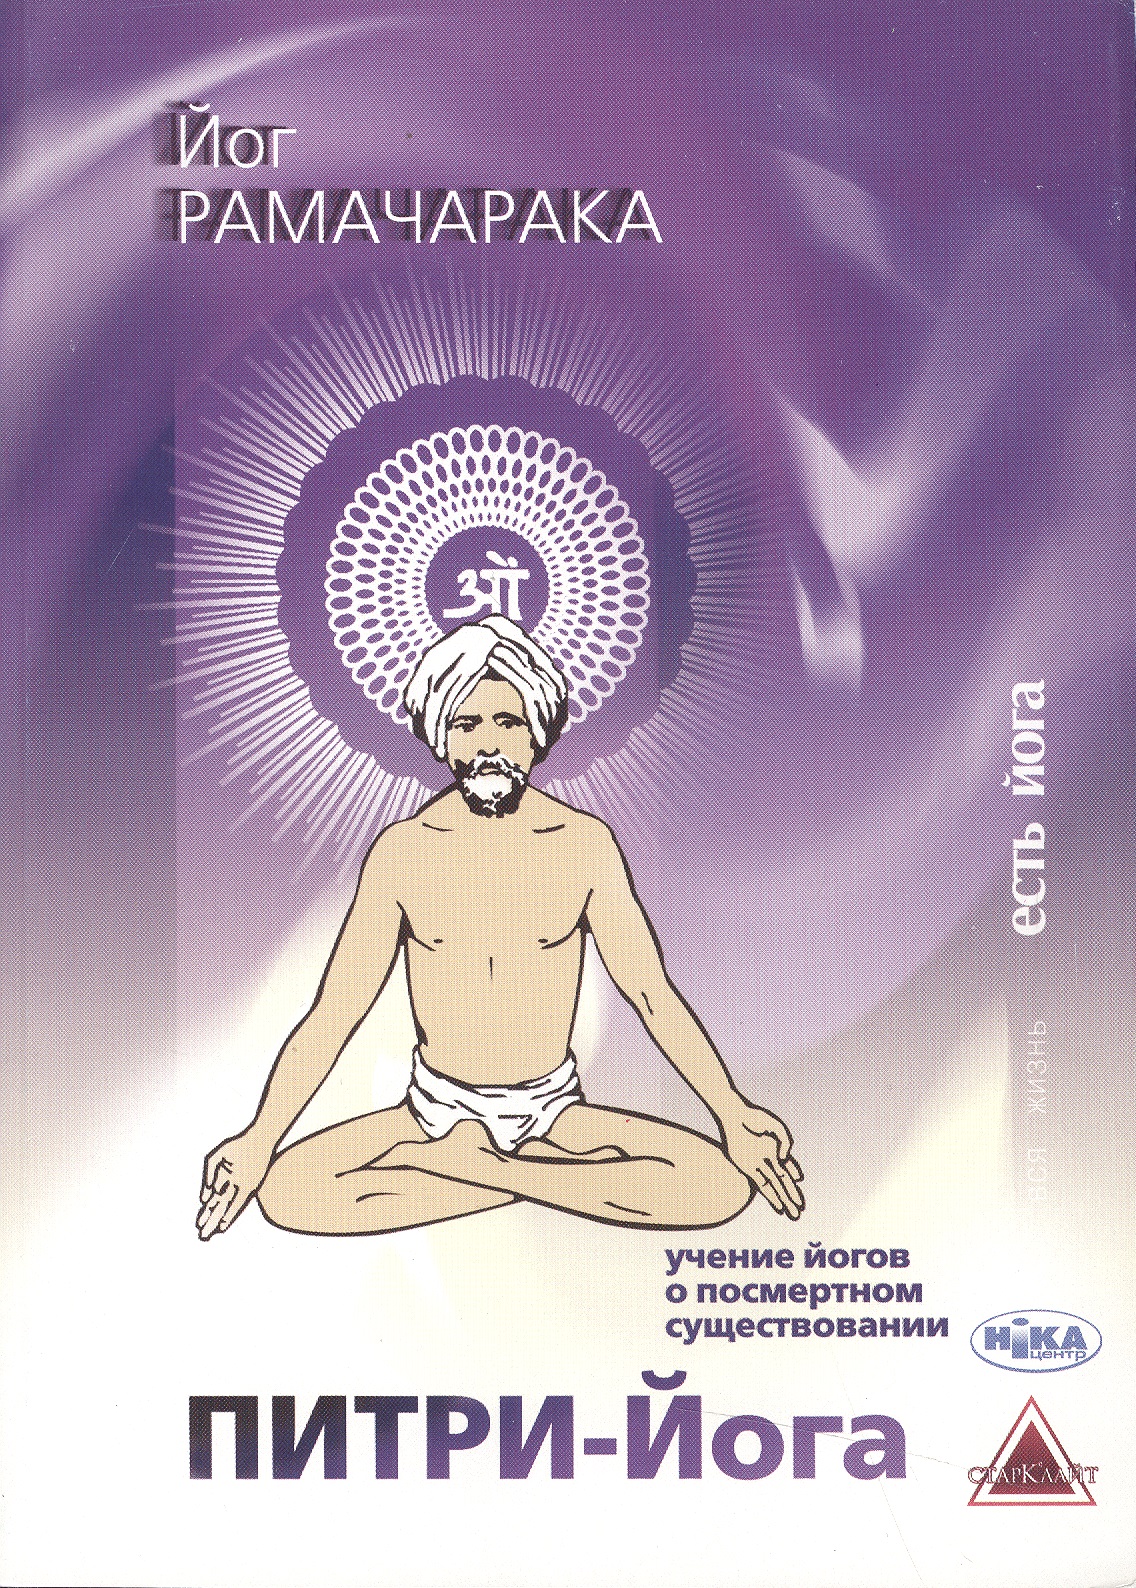 Питри-Йога Учение йогов о посмертном существовании... (мВЖЕЙ) Рамачарака рамачарака наука о дыхании индийских йогов хатха йога 2 е издание